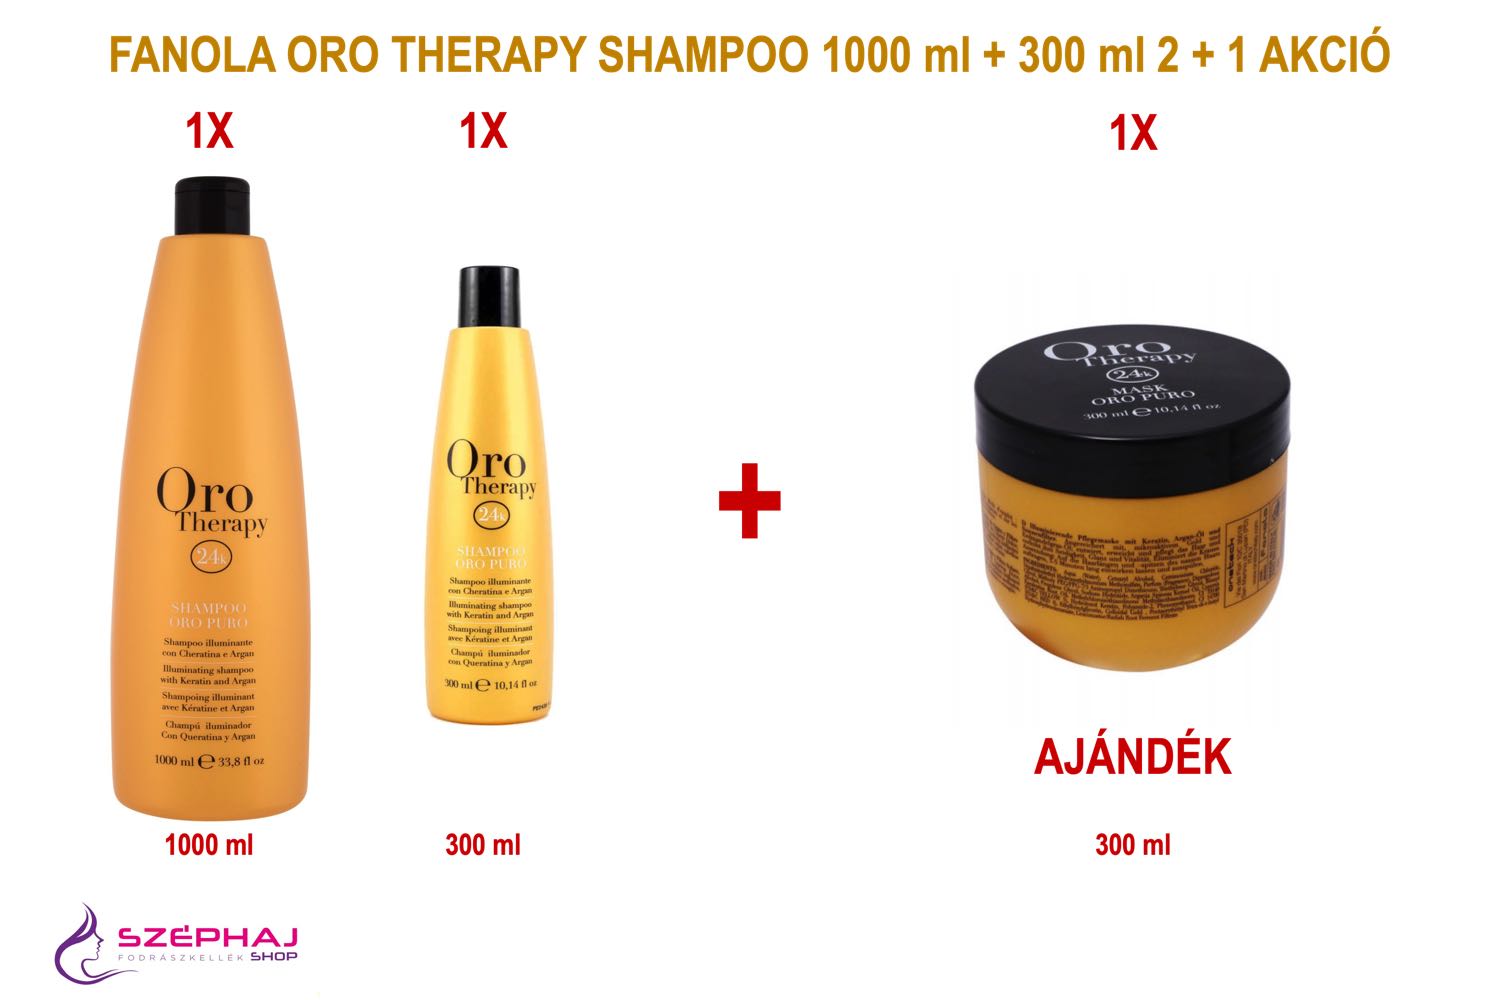 FANOLA Oro Therapy Shampoo 1000 ml & 300 ml 2+1 AKCIÓ